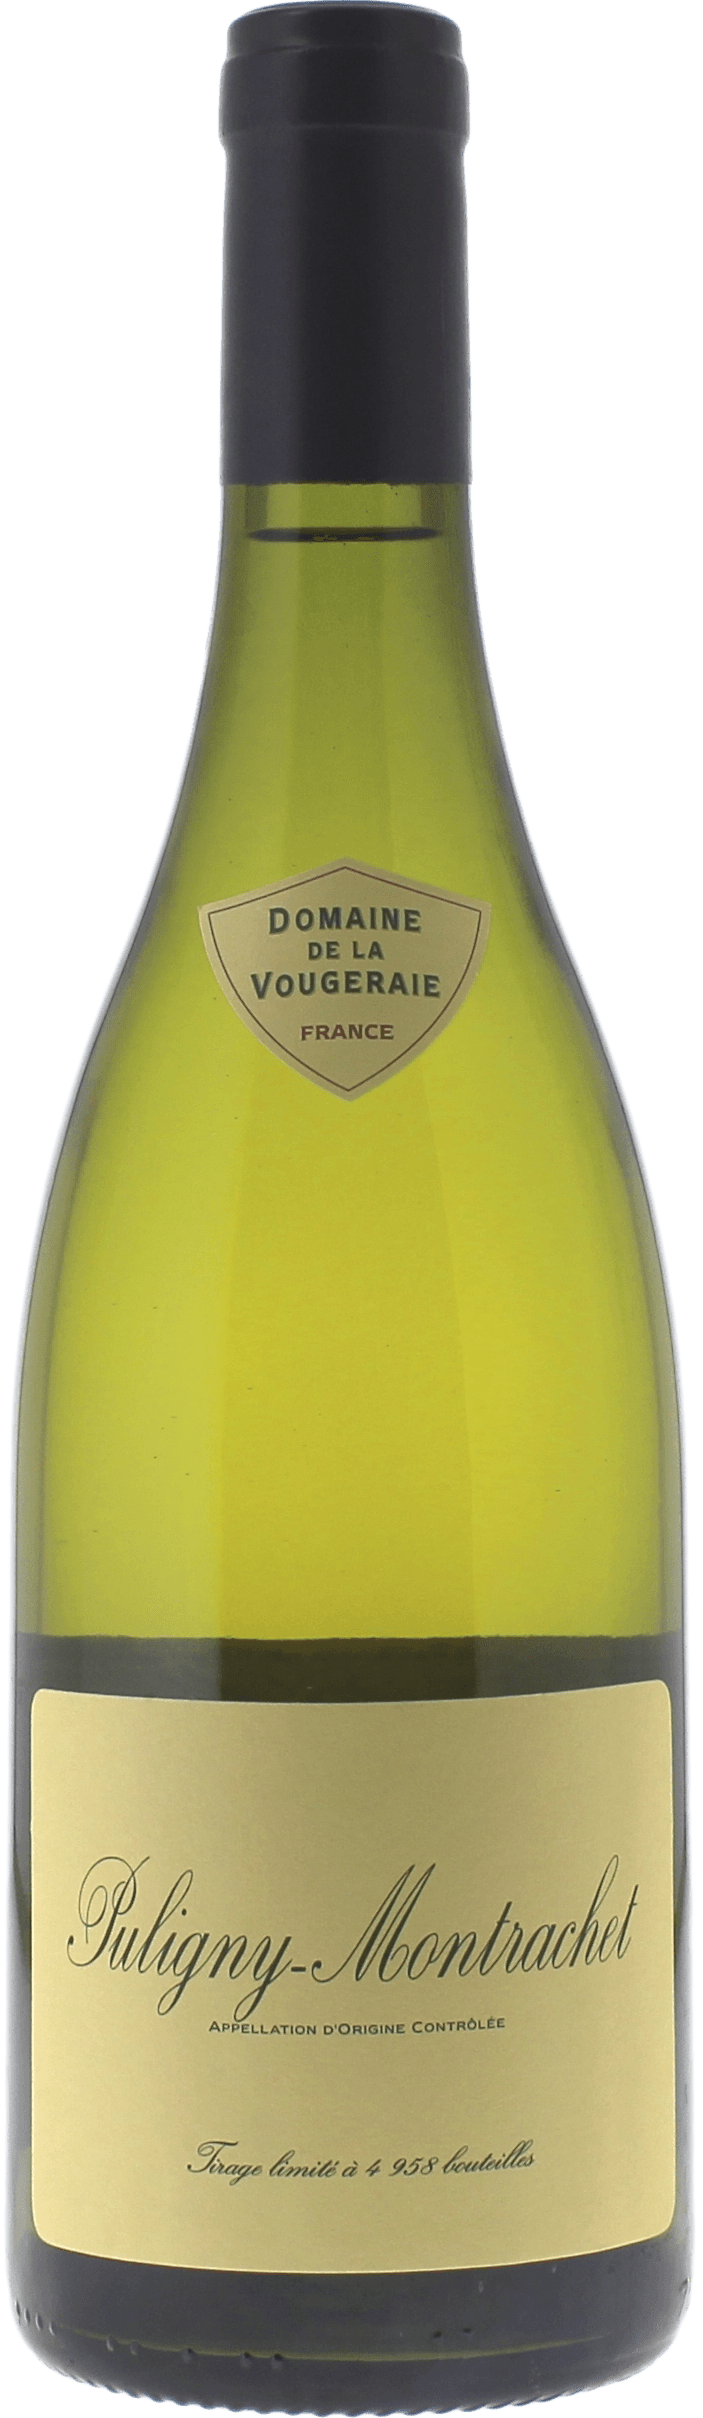 Puligny montrachet 2018 Domaine VOUGERAIE, Bourgogne blanc